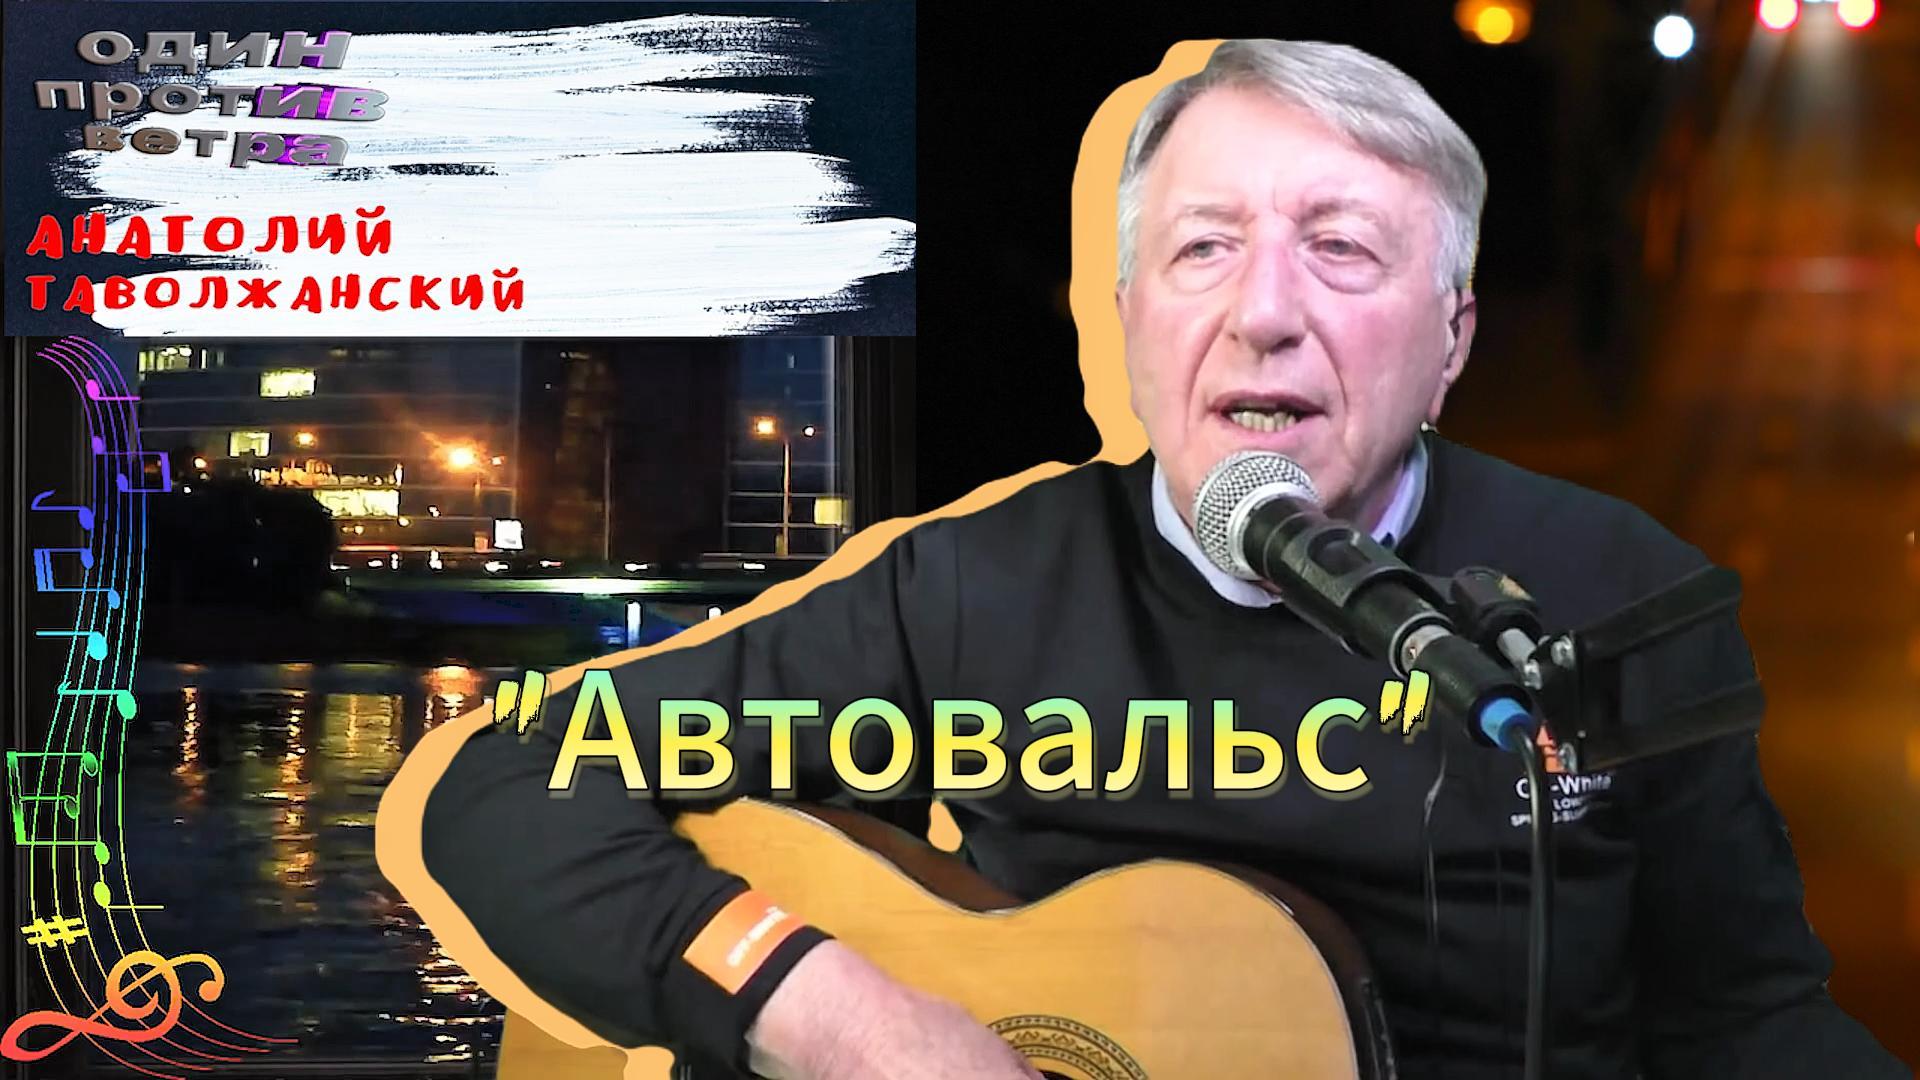 Автовальс

автор исполнитель Анатолий Таволжанский